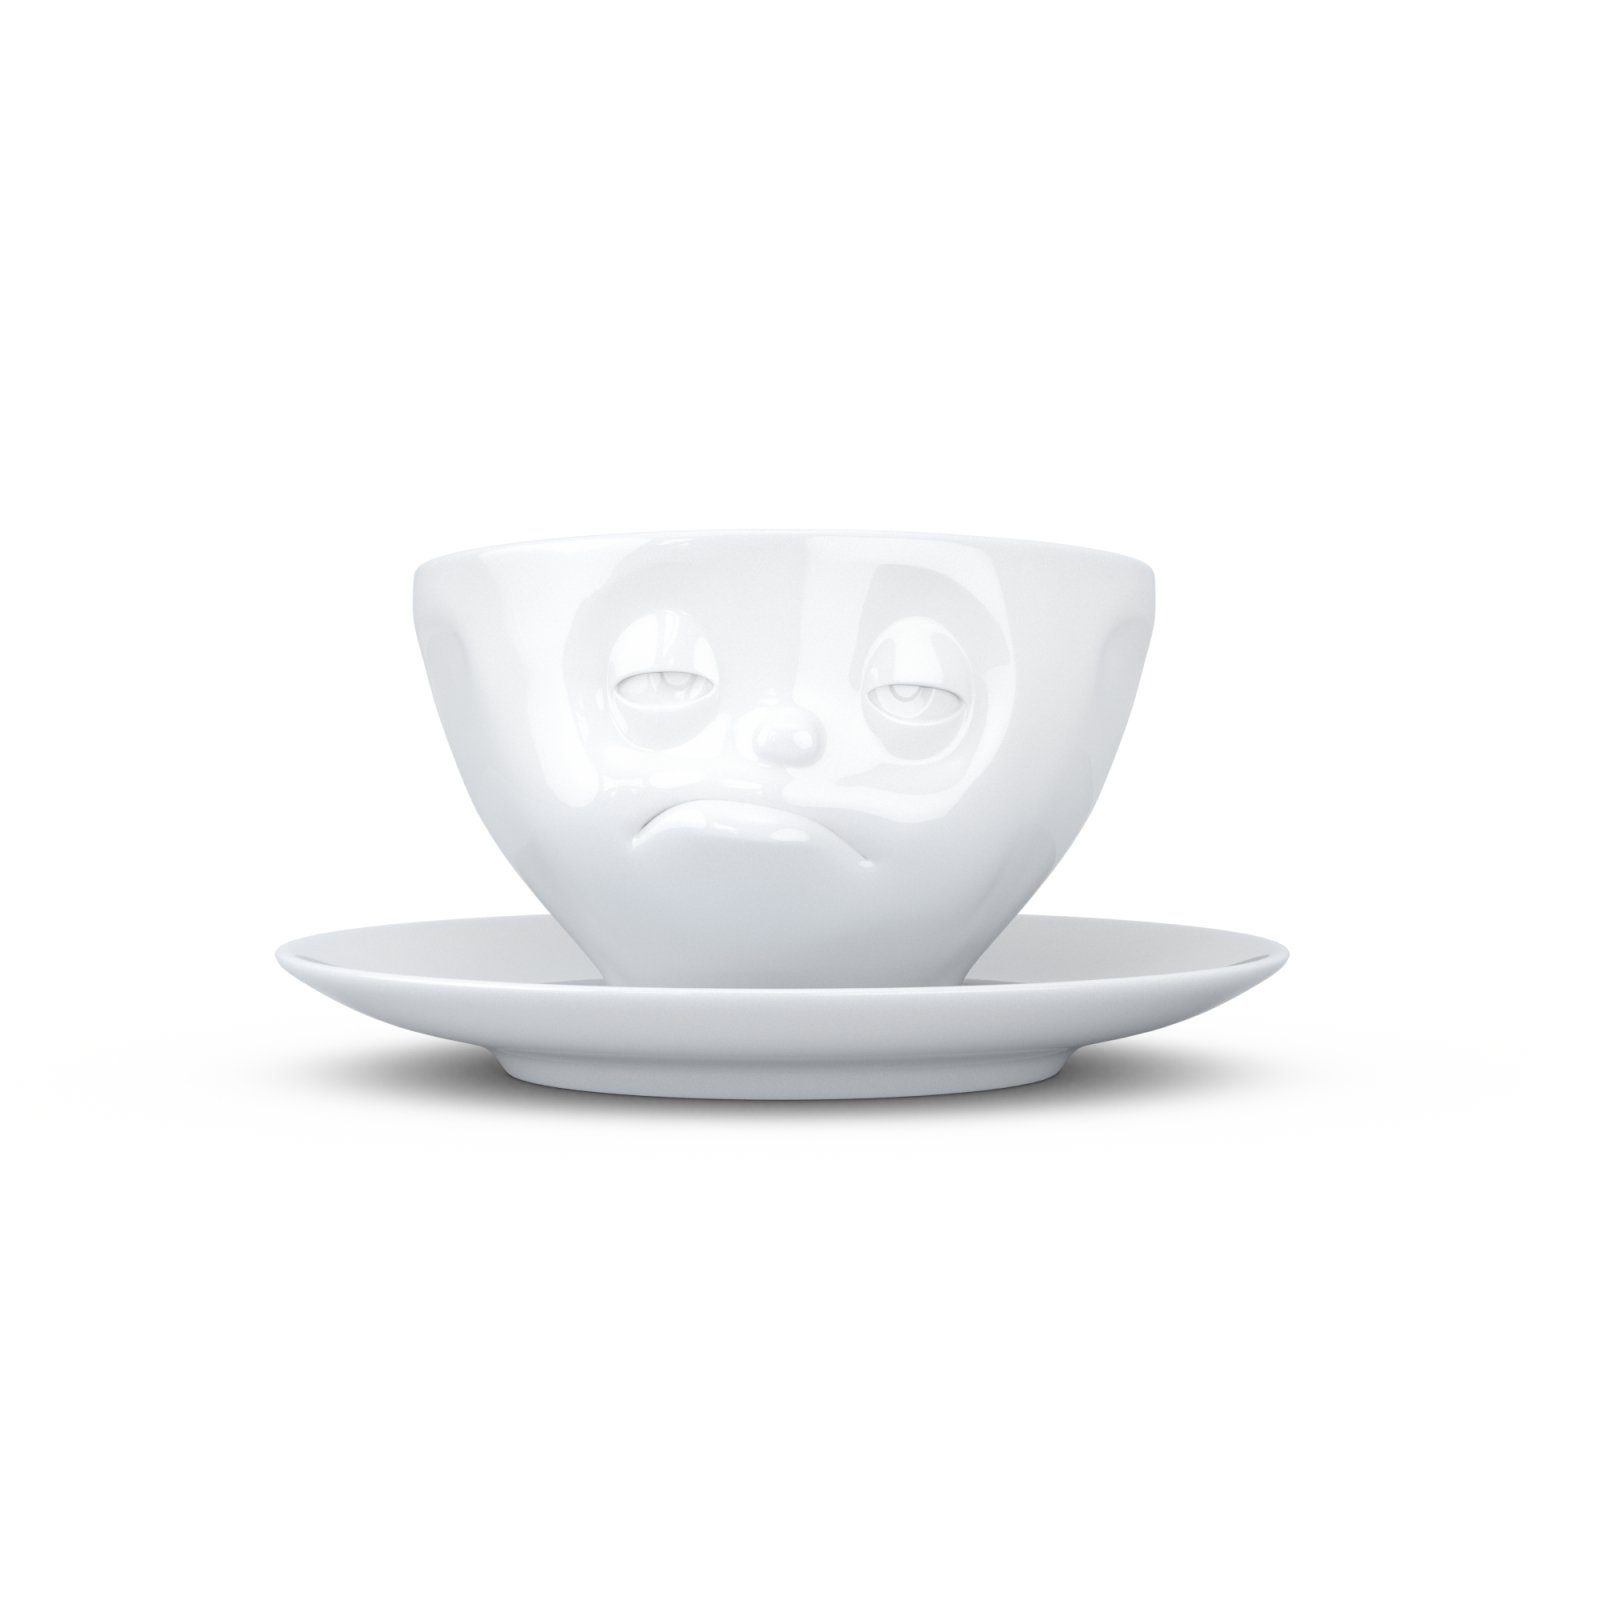 FIFTYEIGHT PRODUCTS Tasse 200 Verpennt weiß Weiß - Tasse Kaffeetasse - ml